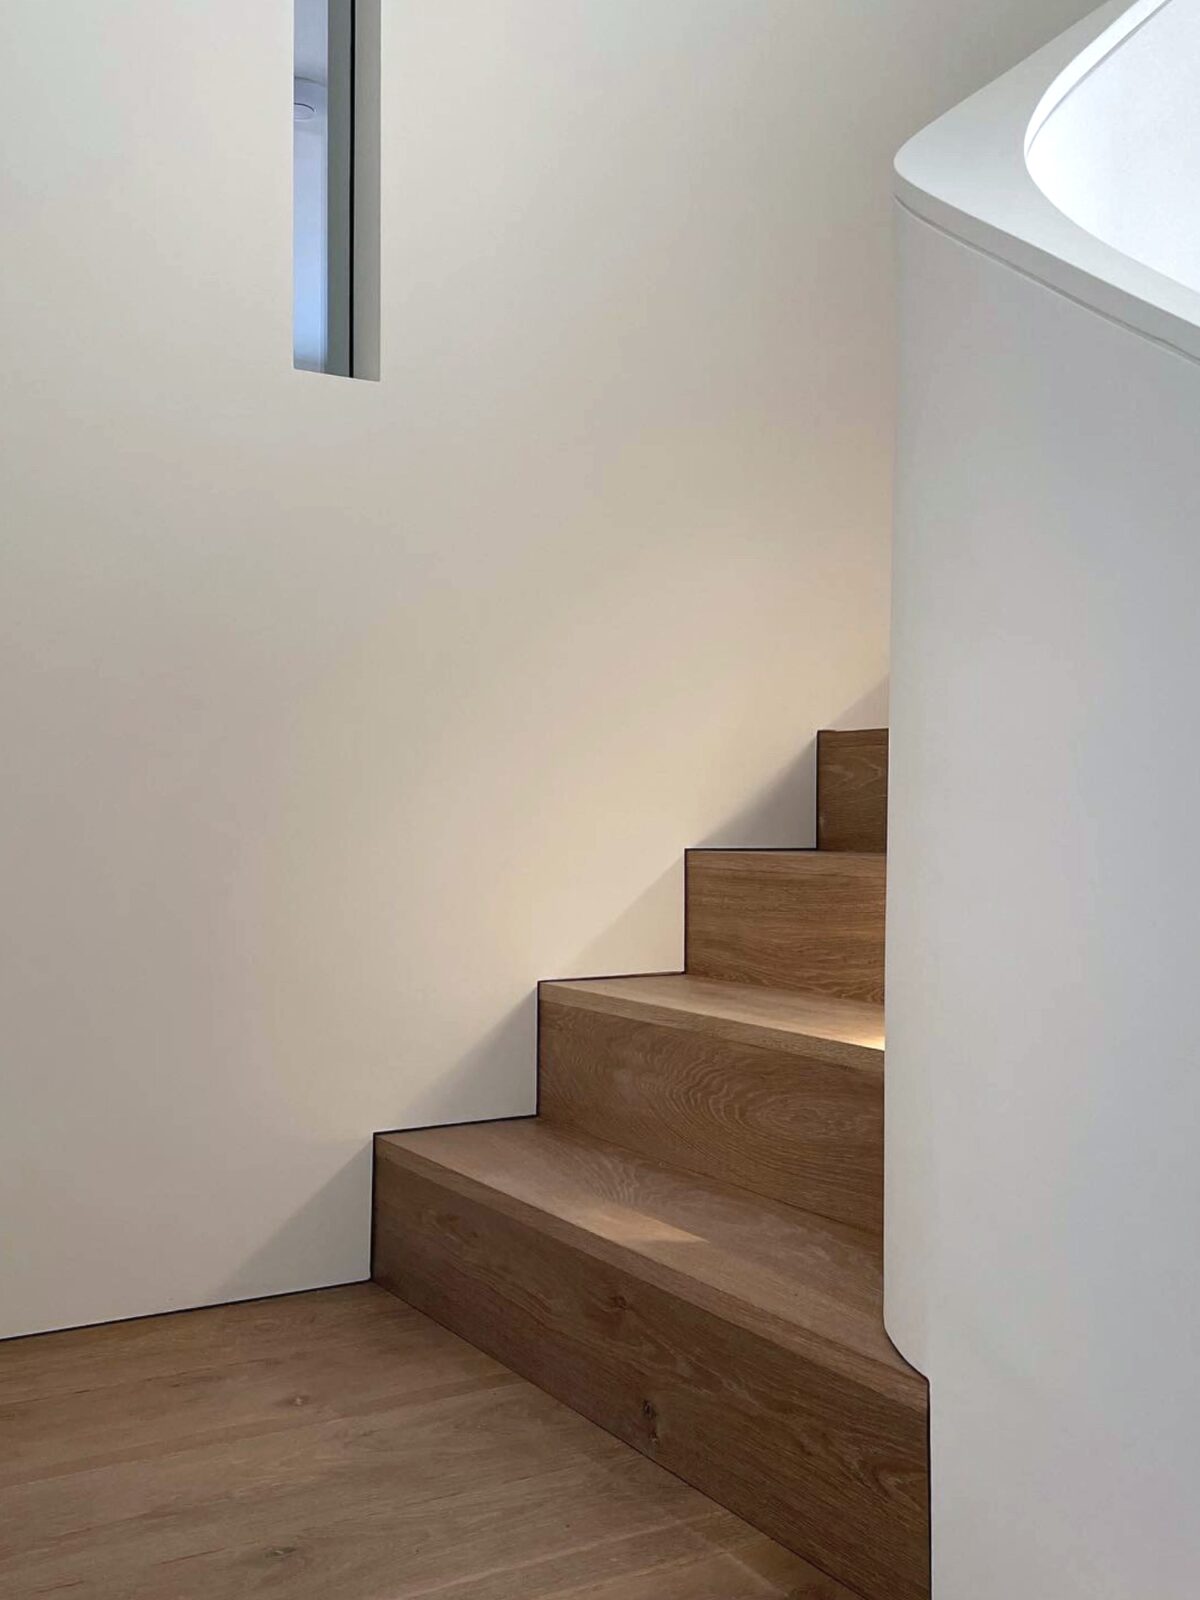 Landmark dyrham winchester4 solid floor stairs